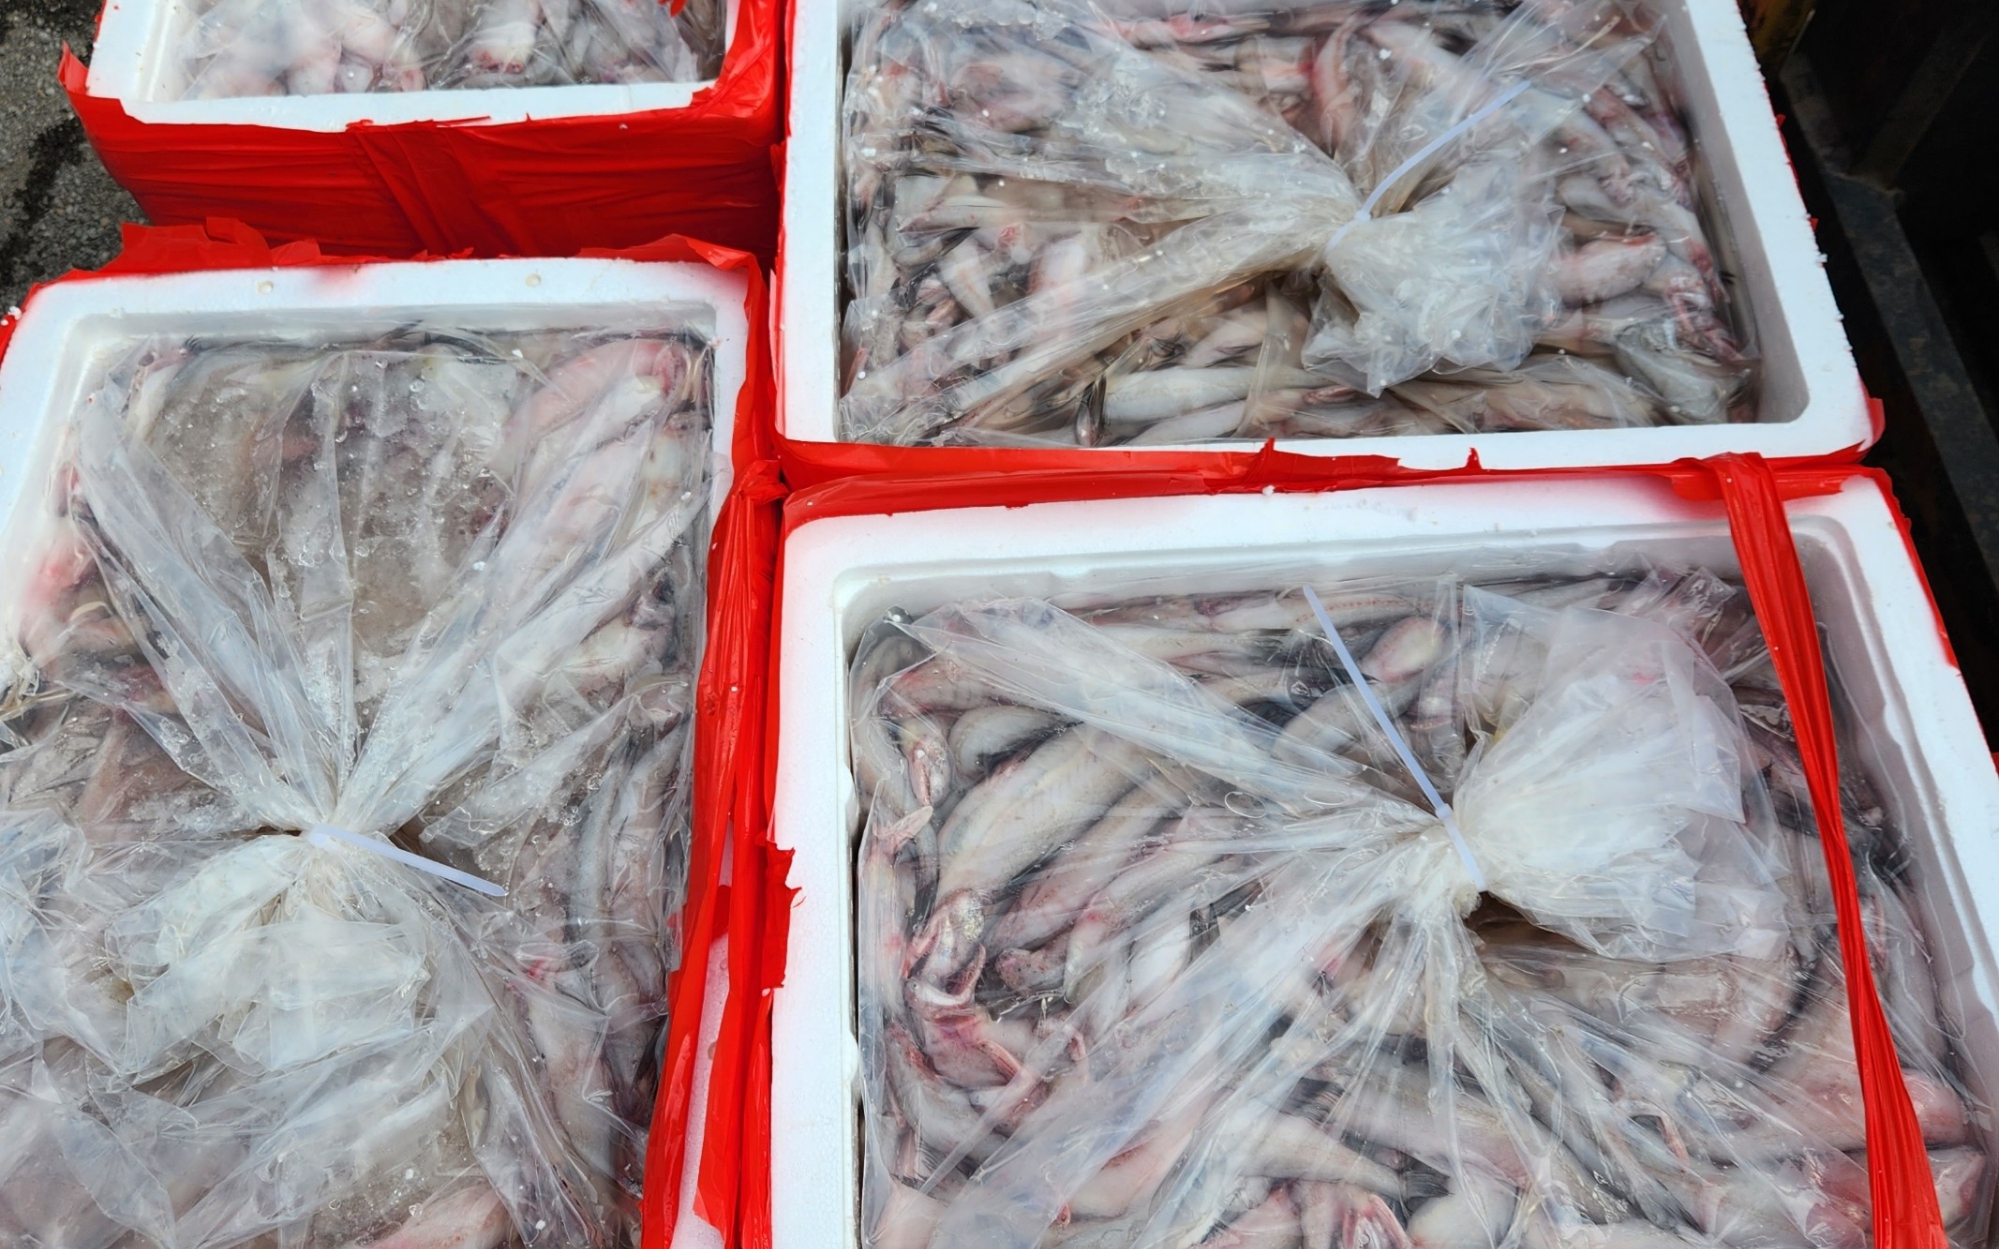 Phát hiện 4,5 tấn cá có chất "kịch độc", chuyên gia chỉ rõ cơ thể bị tàn phá ra sao nếu ăn phải cá nhiễm độc này